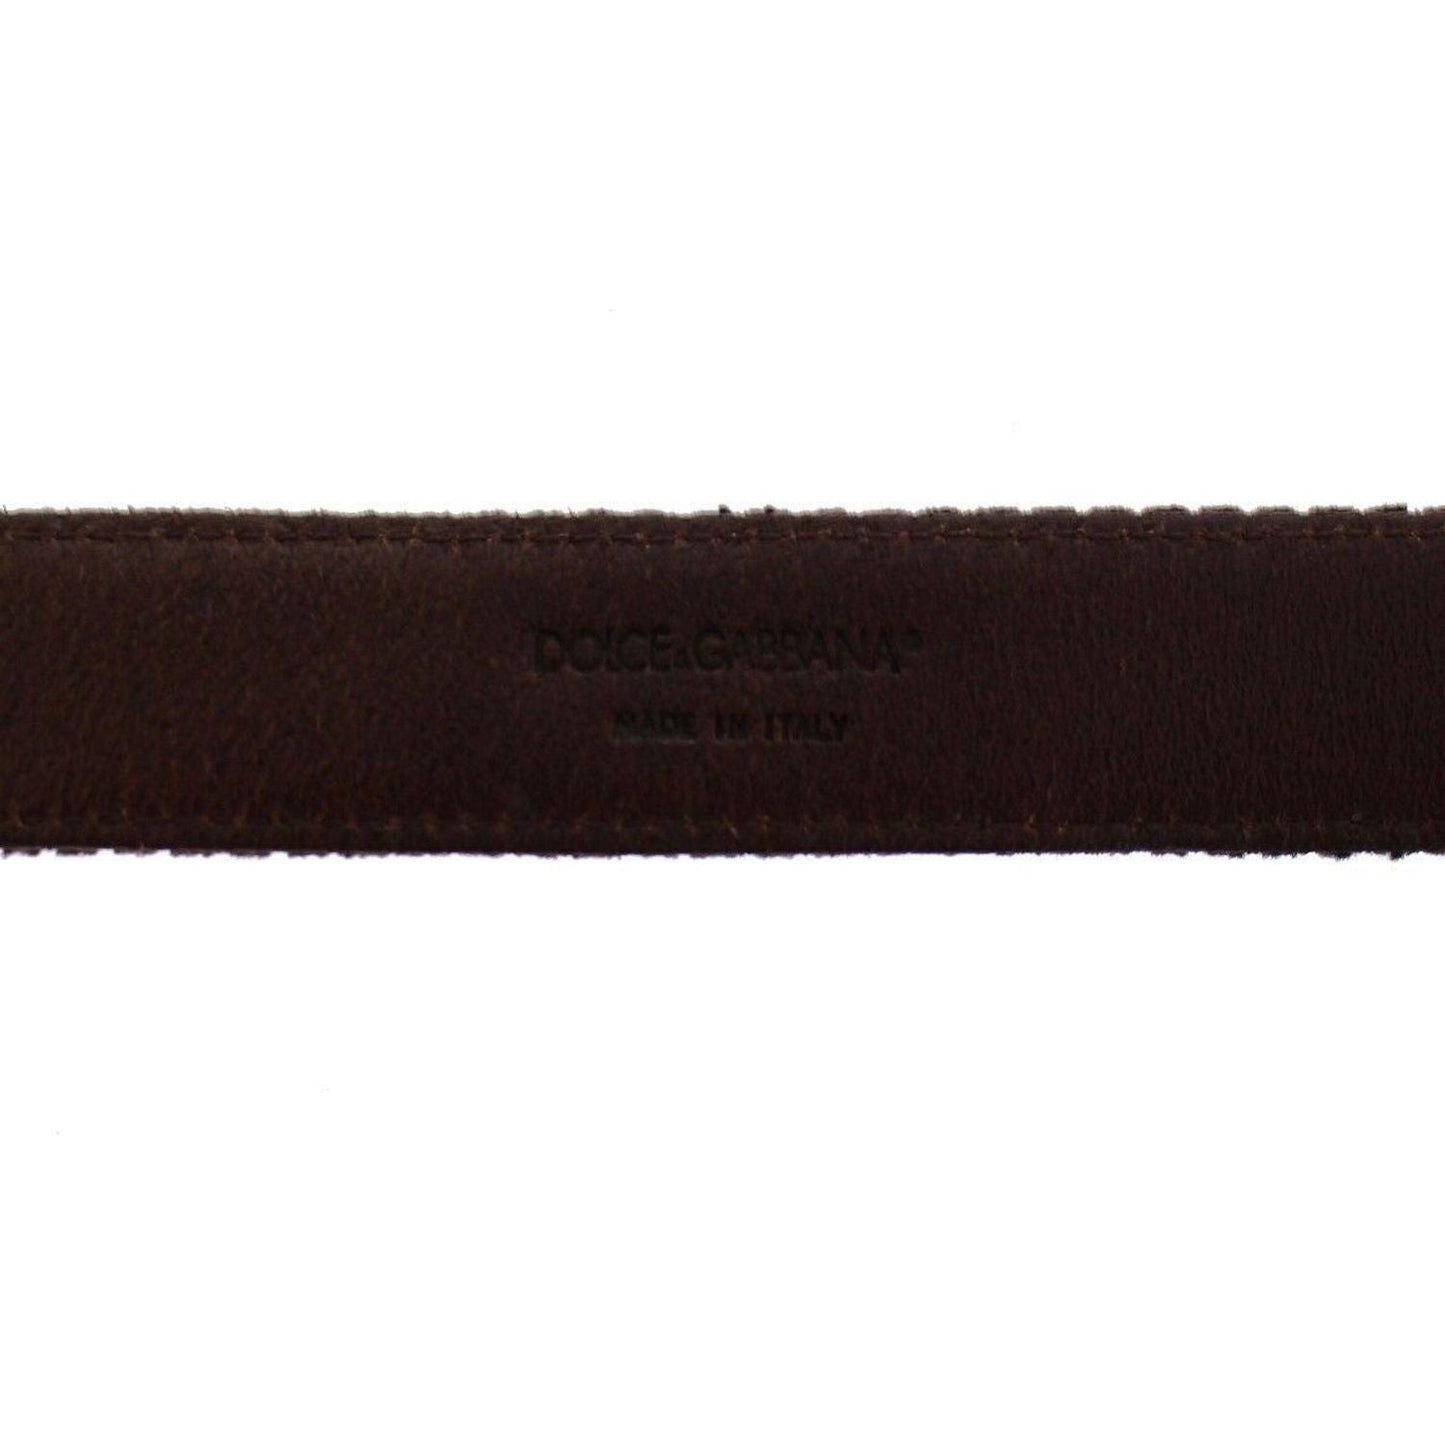 Dolce & Gabbana Elegant Leather-Cotton Fusion Men's Belt Belt brown-leather-logo-cintura-gurtel-belt-2